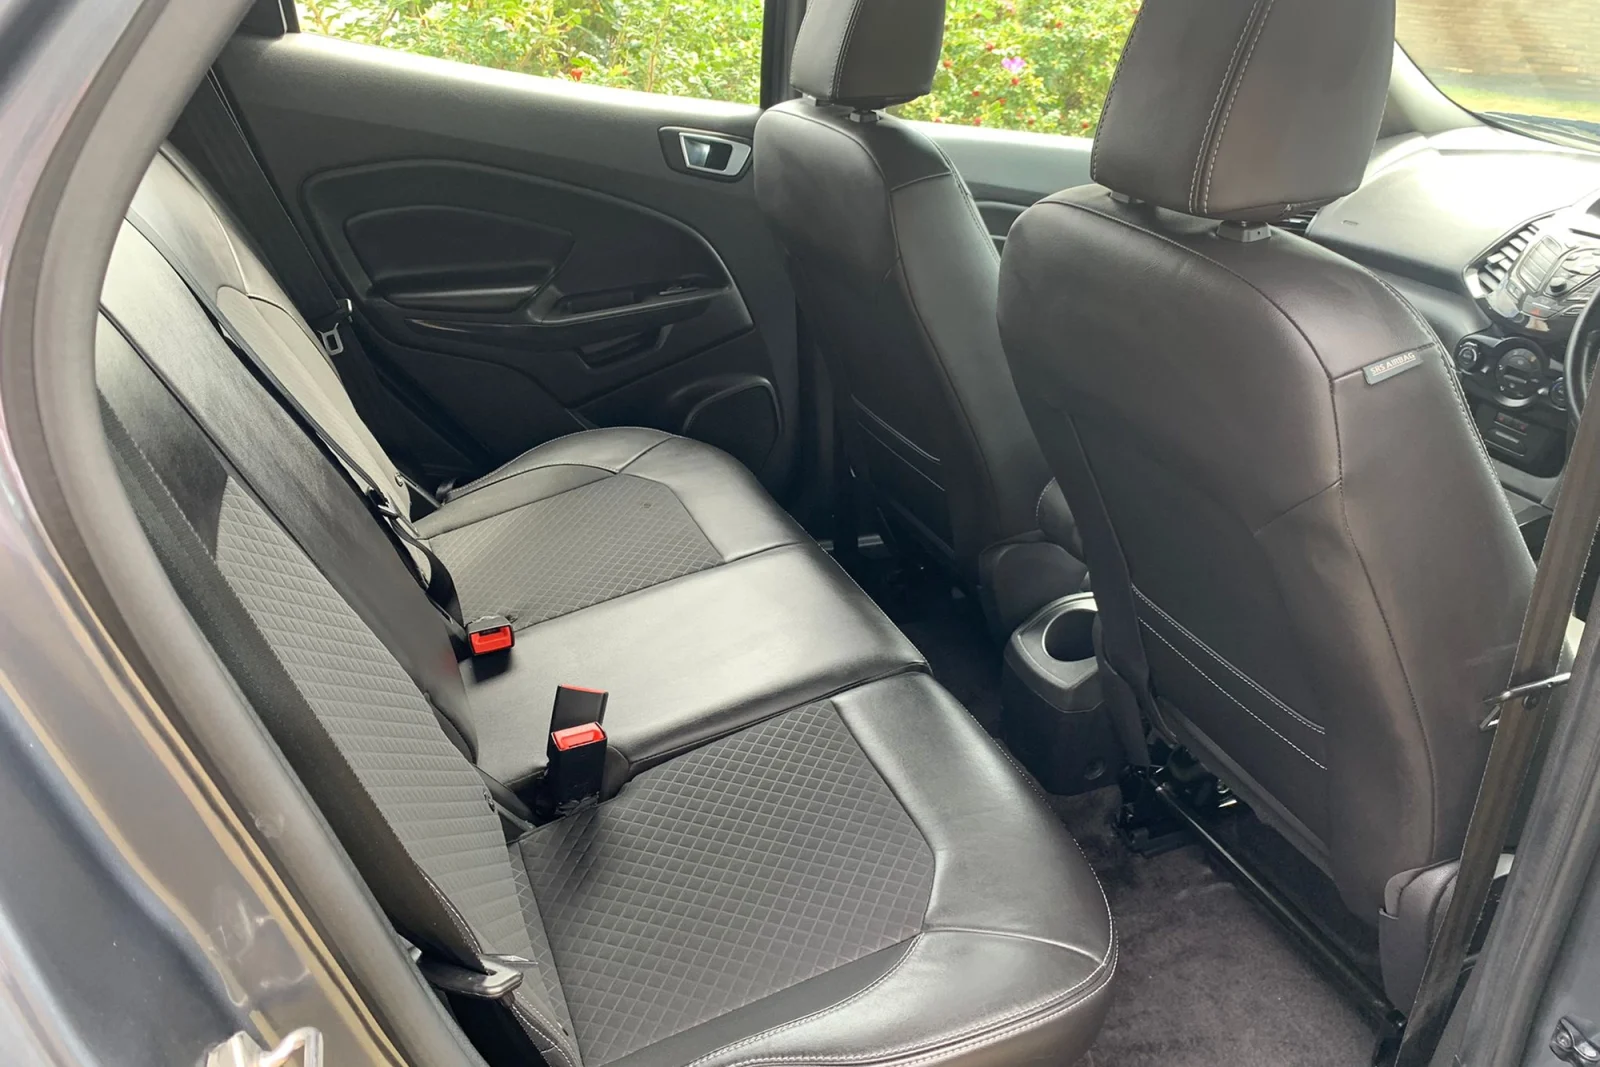 Ford-Ecosport-Interior-Backseata-scaled.webp